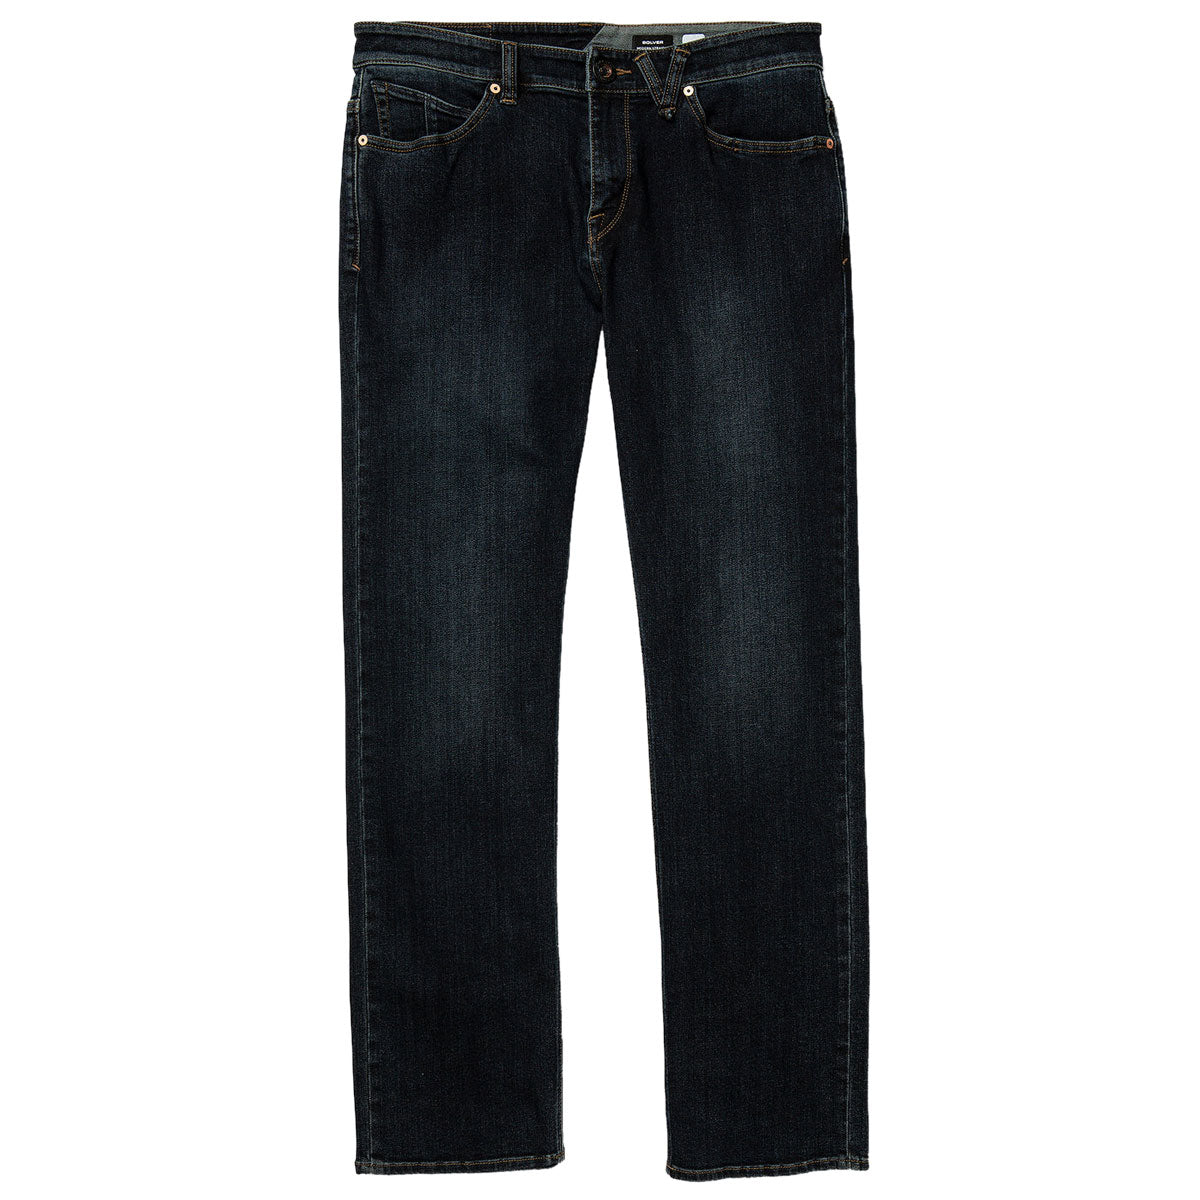 Volcom Solver Denim Jeans - New Vintage Blue image 1